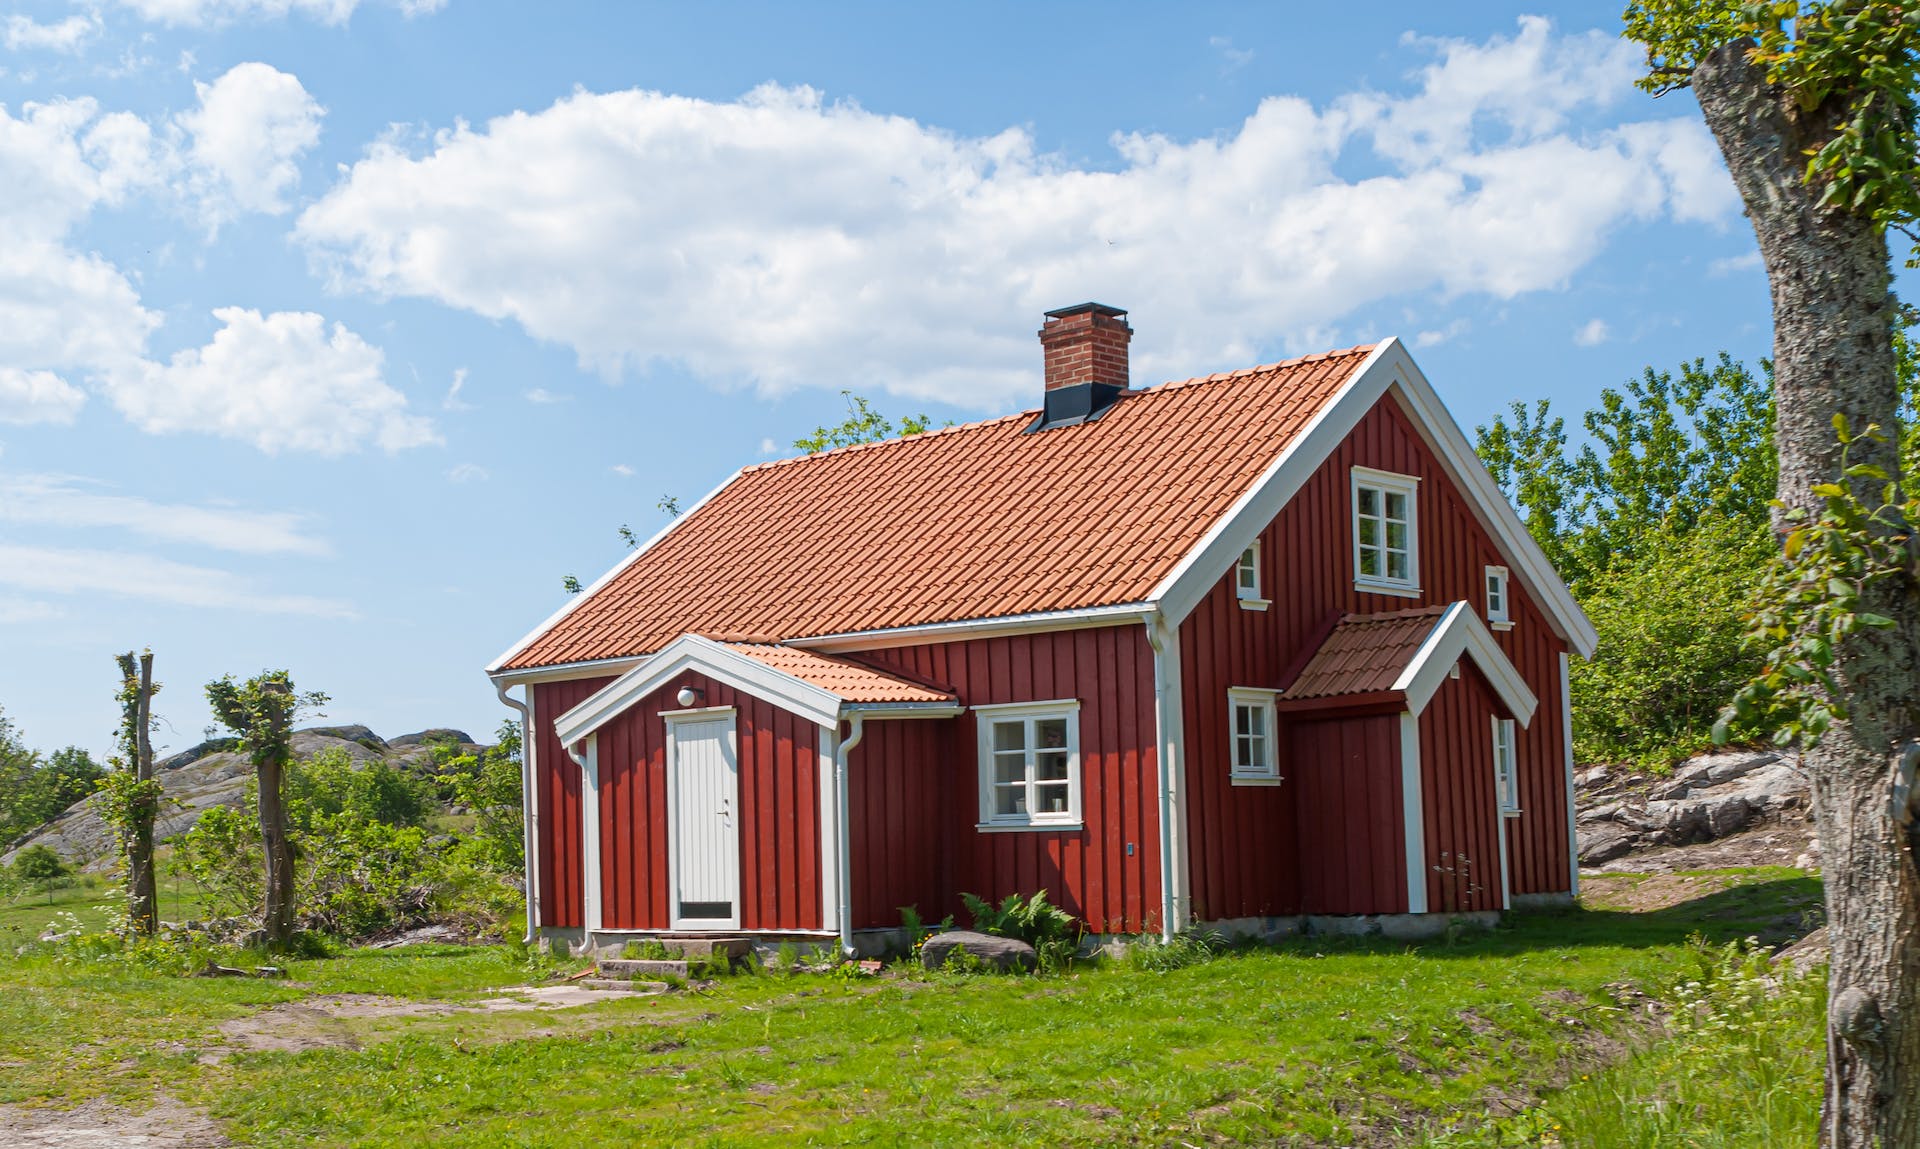 Une maison de grange rouge | Source : Pexels